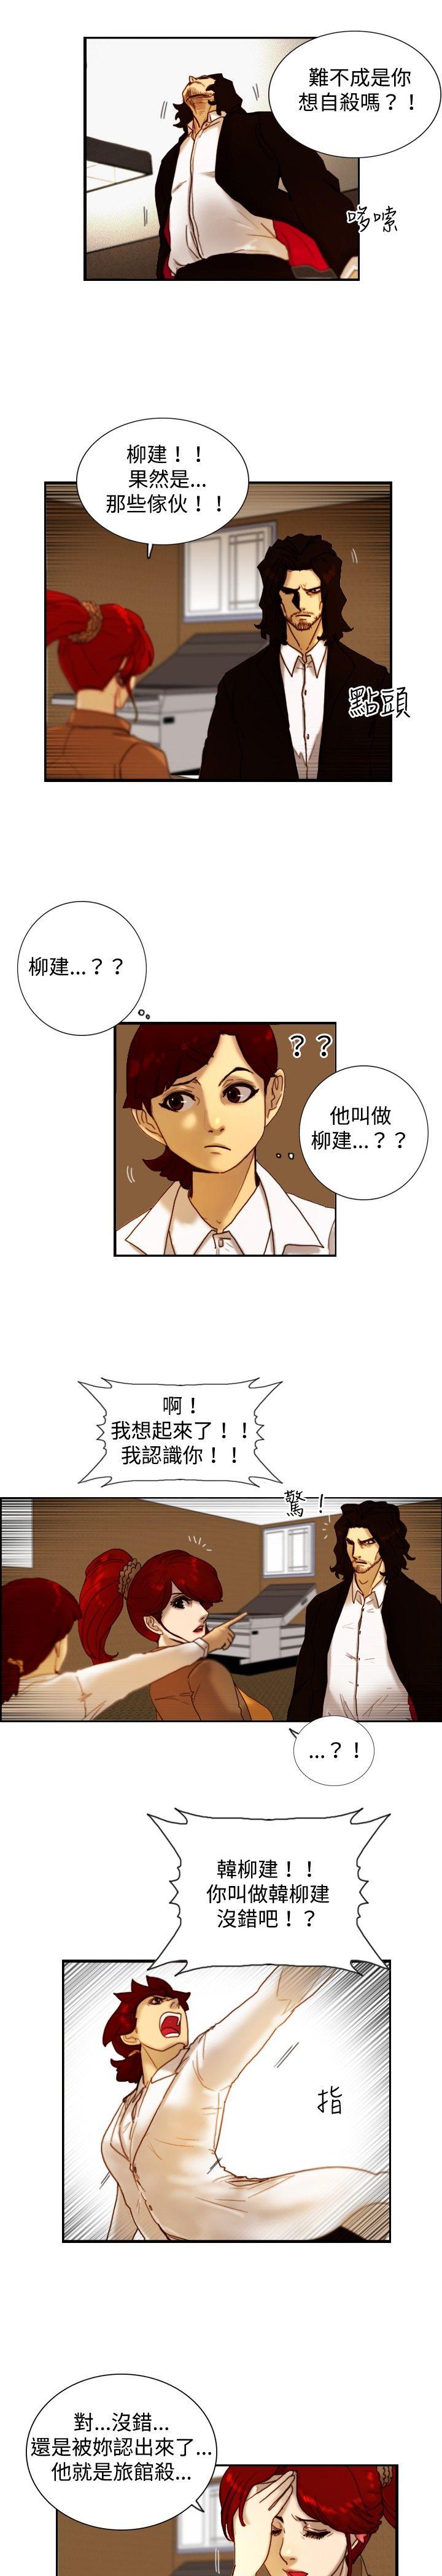 觉醒(完结)  第13话作战-1 漫画图片13.jpg